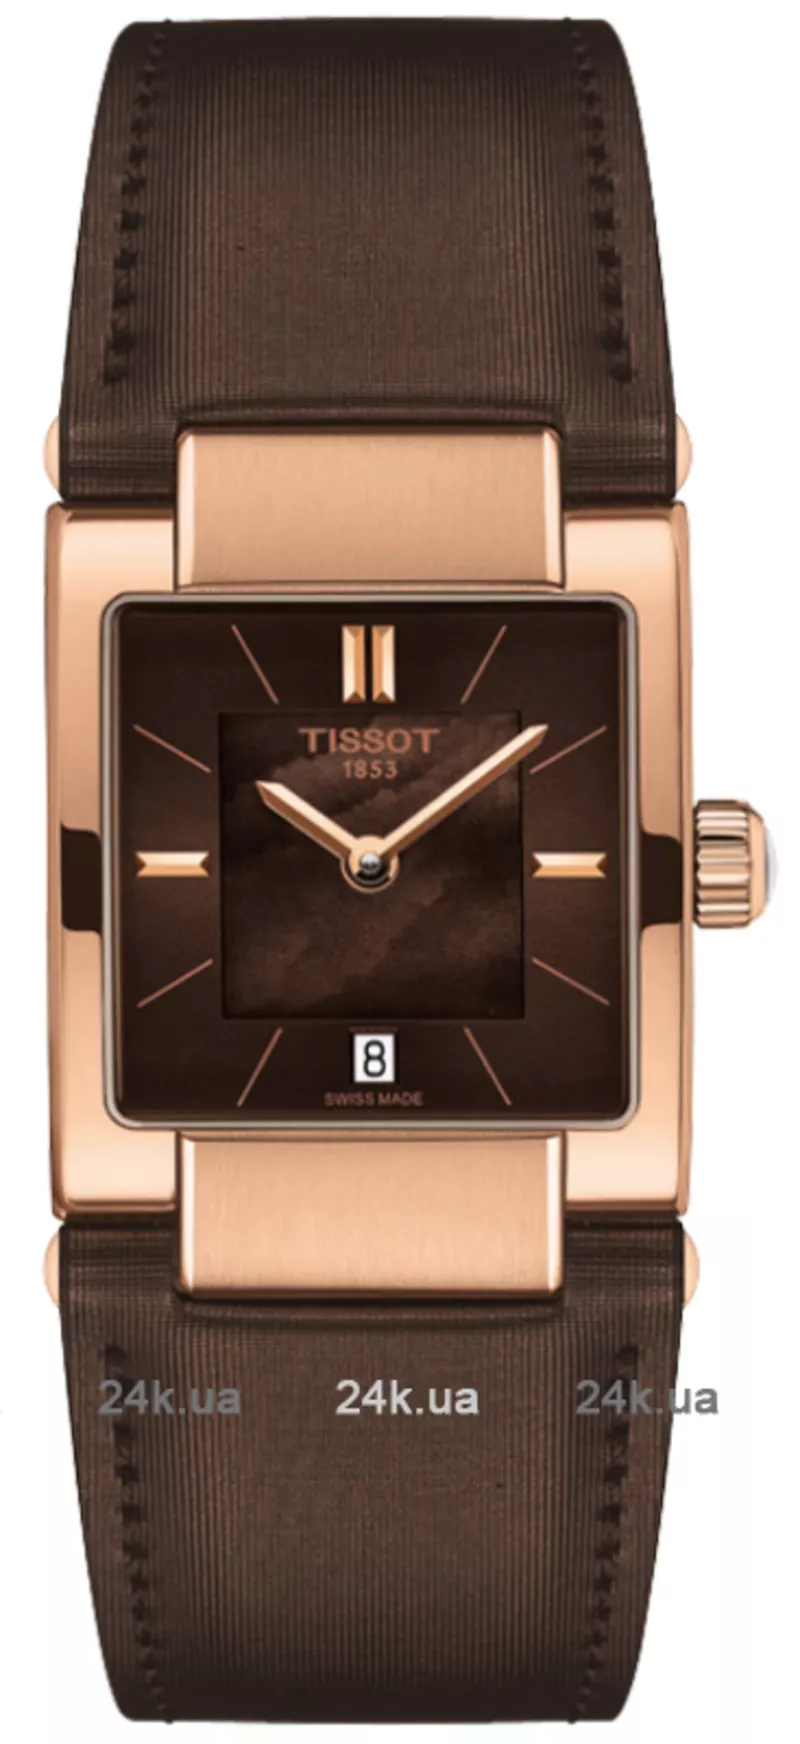 Часы Tissot T090.310.37.381.00